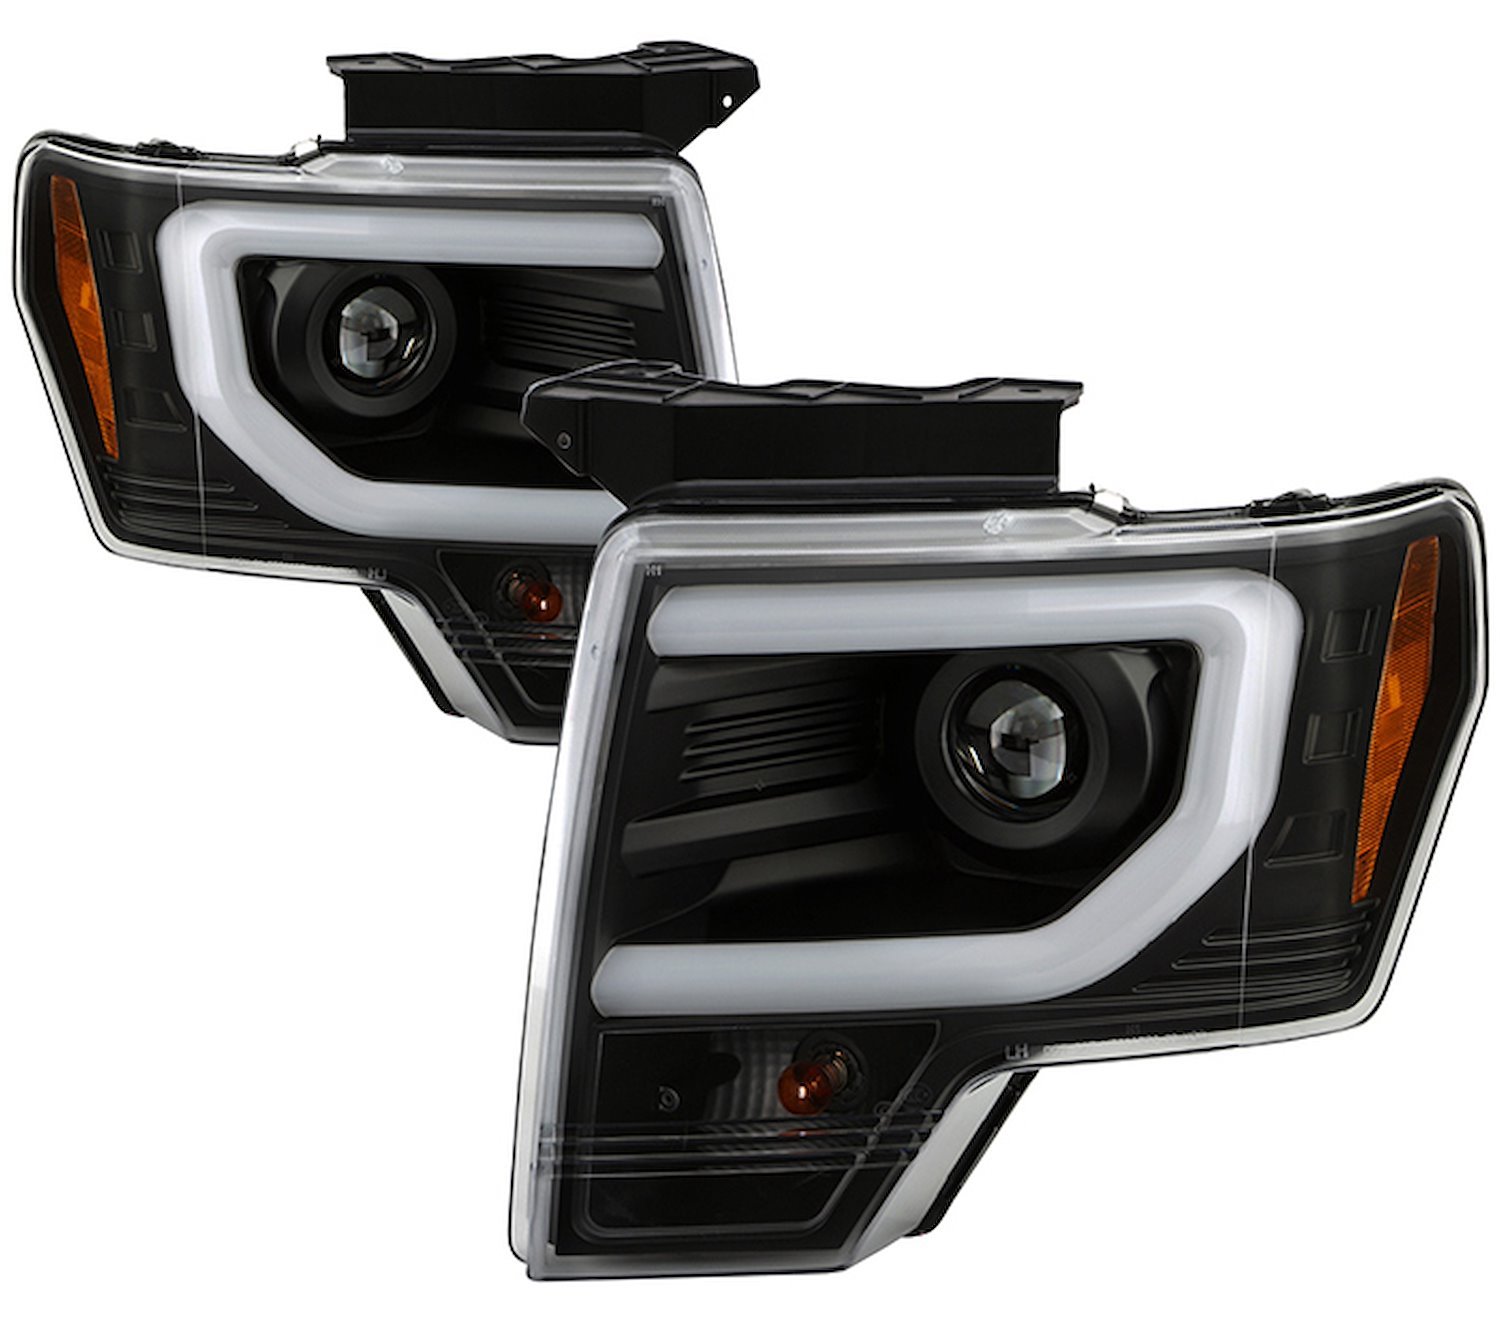 APEX Series Light Bar Projector Headlights 2013-2014 Ford F-150 [Black] Halogen Turn Signal